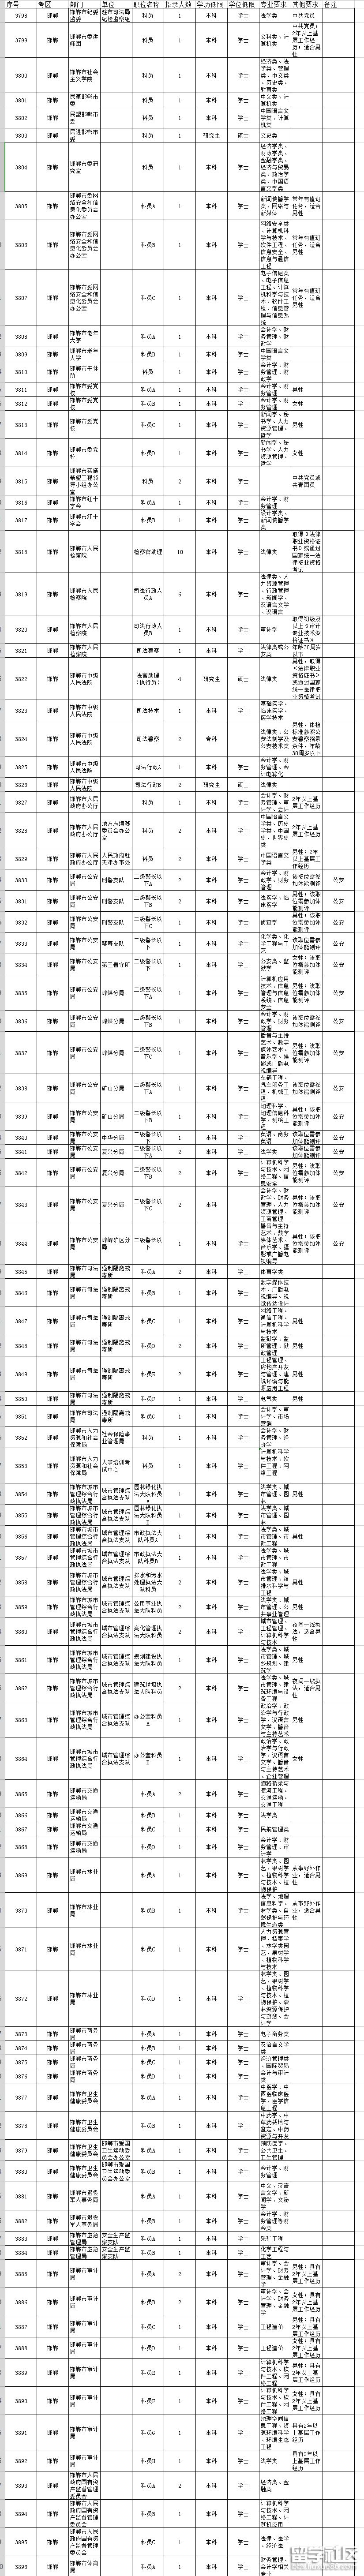 2019年河北公务员考试职位表(邯郸)